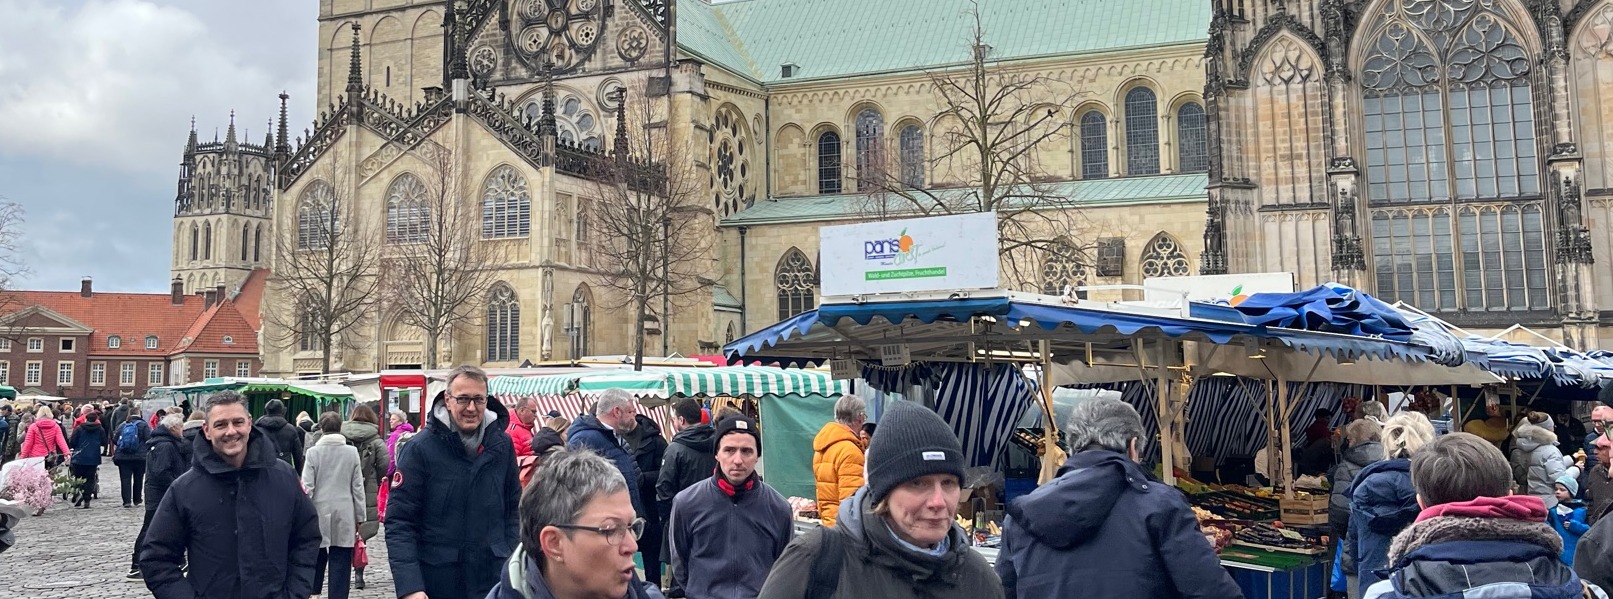 Markt in Münster 1